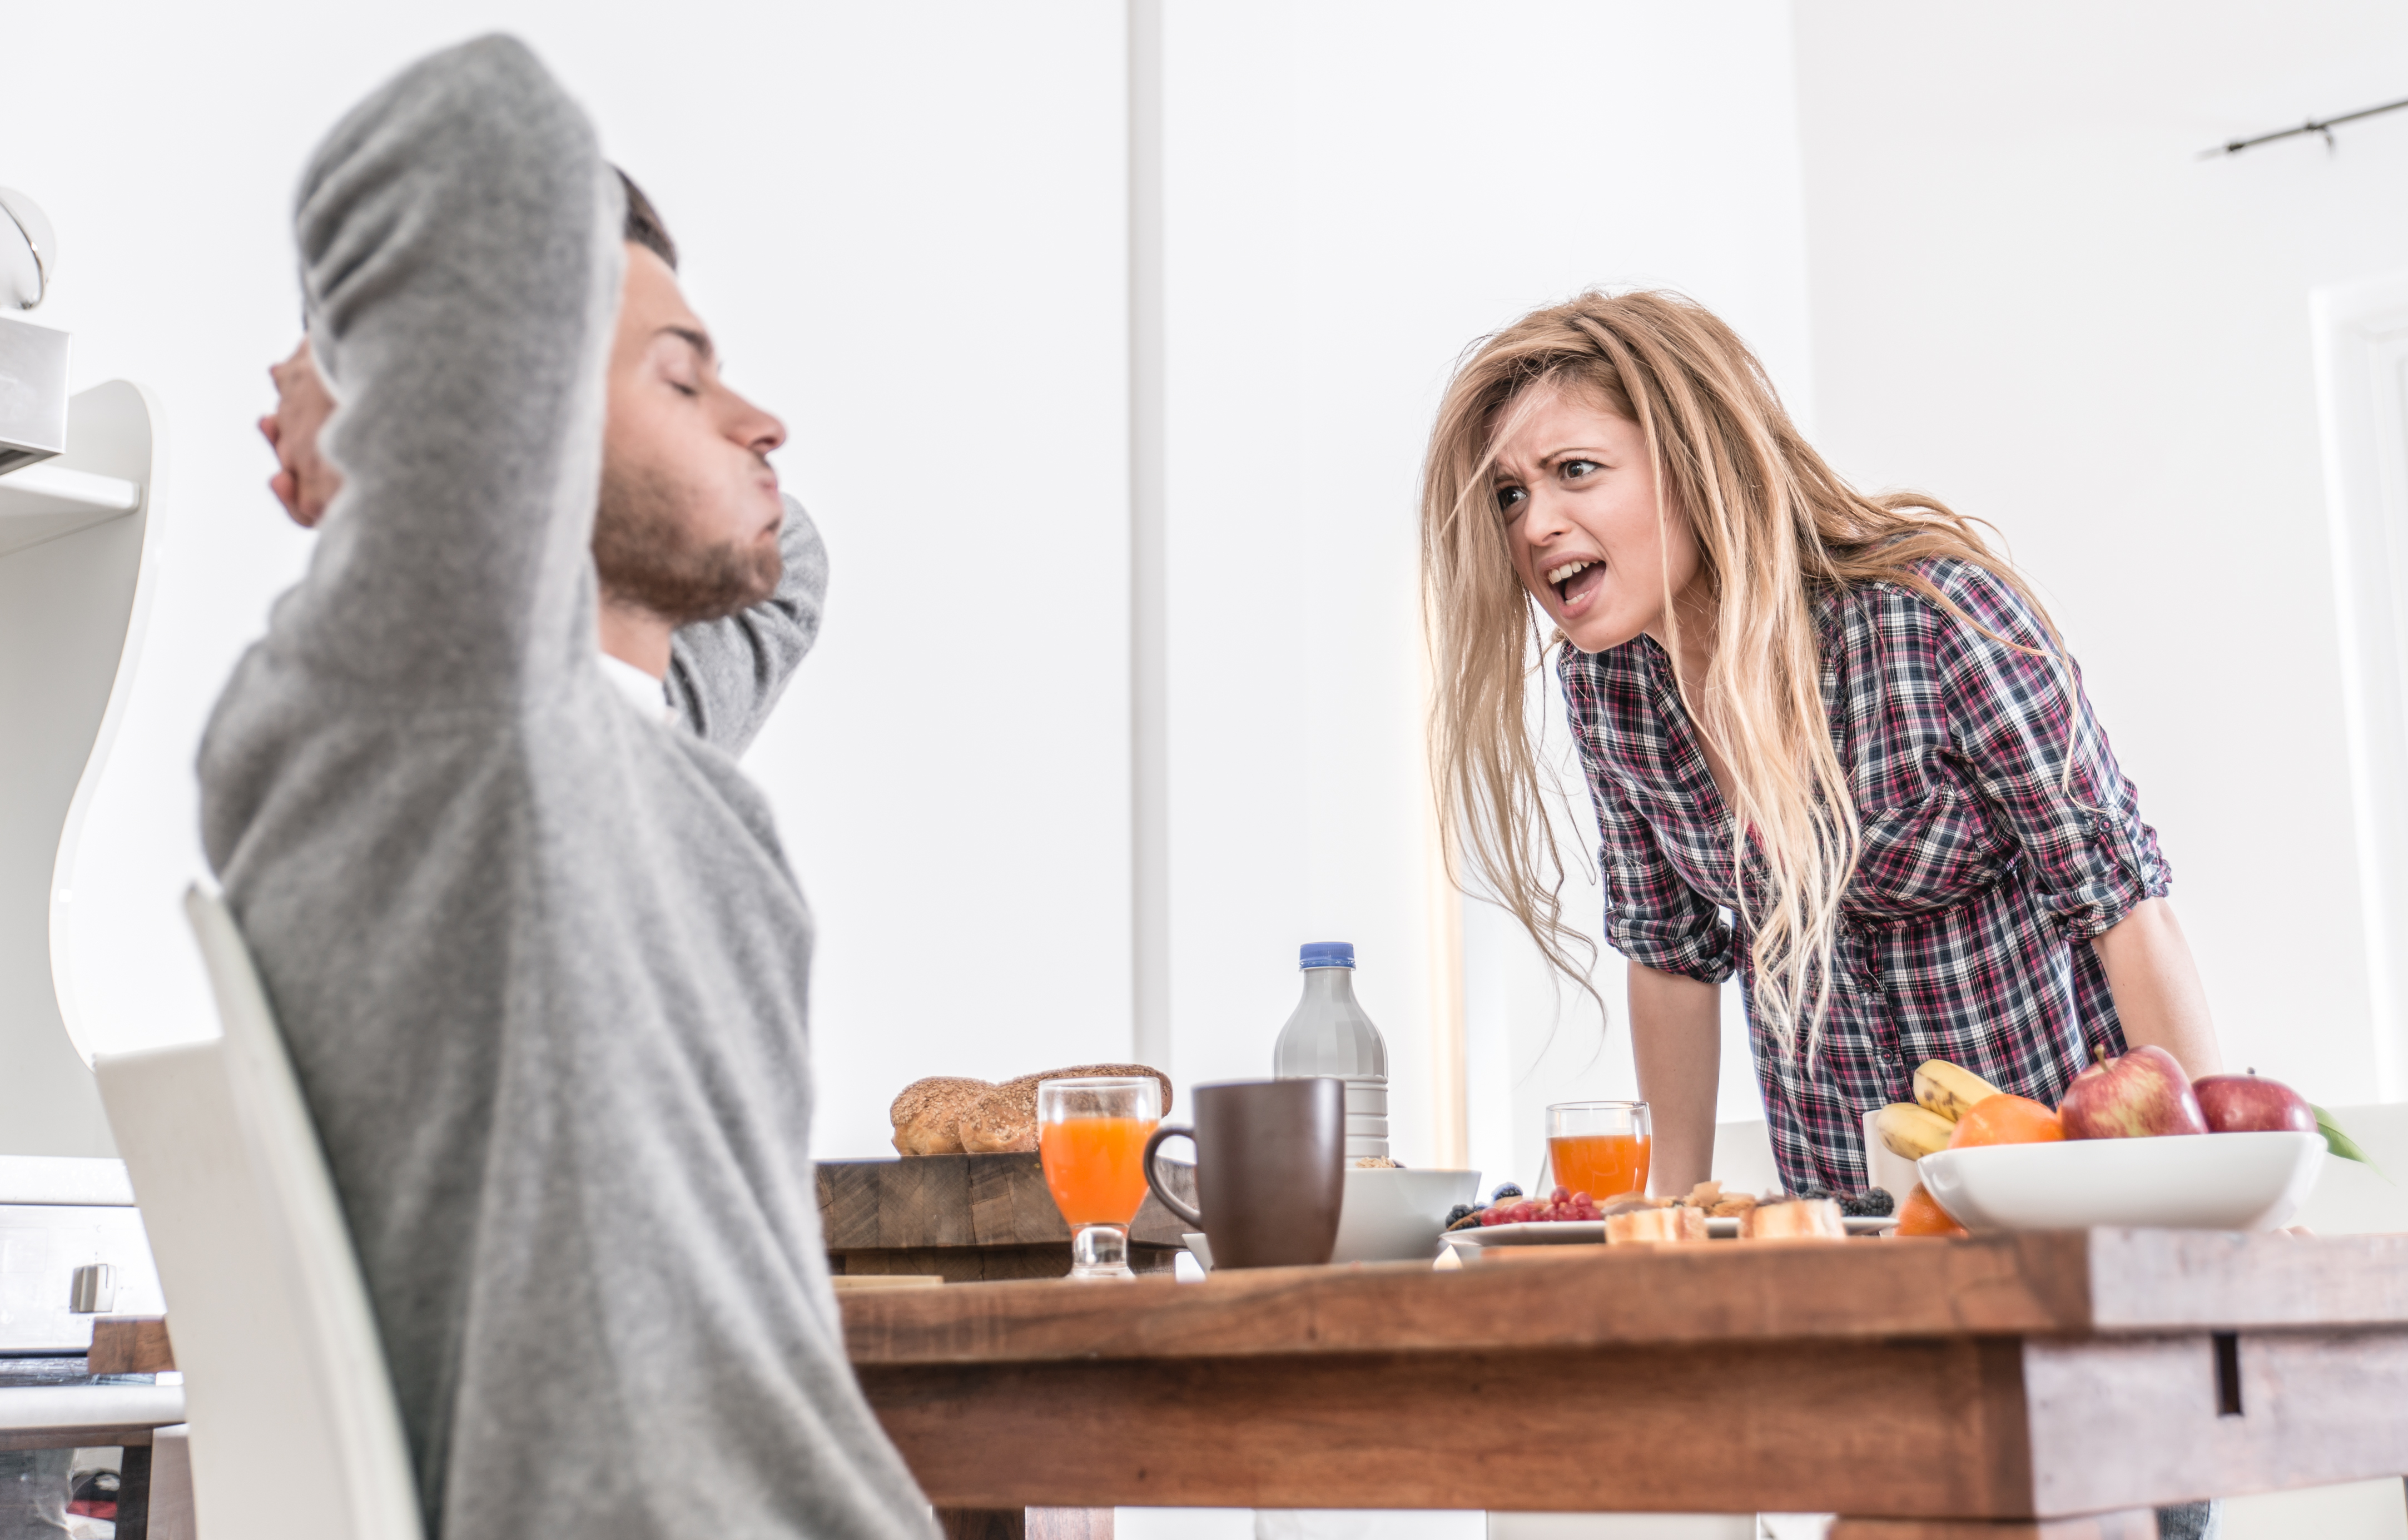 Ein streitendes Paar in einer Küche | Quelle: Shutterstock